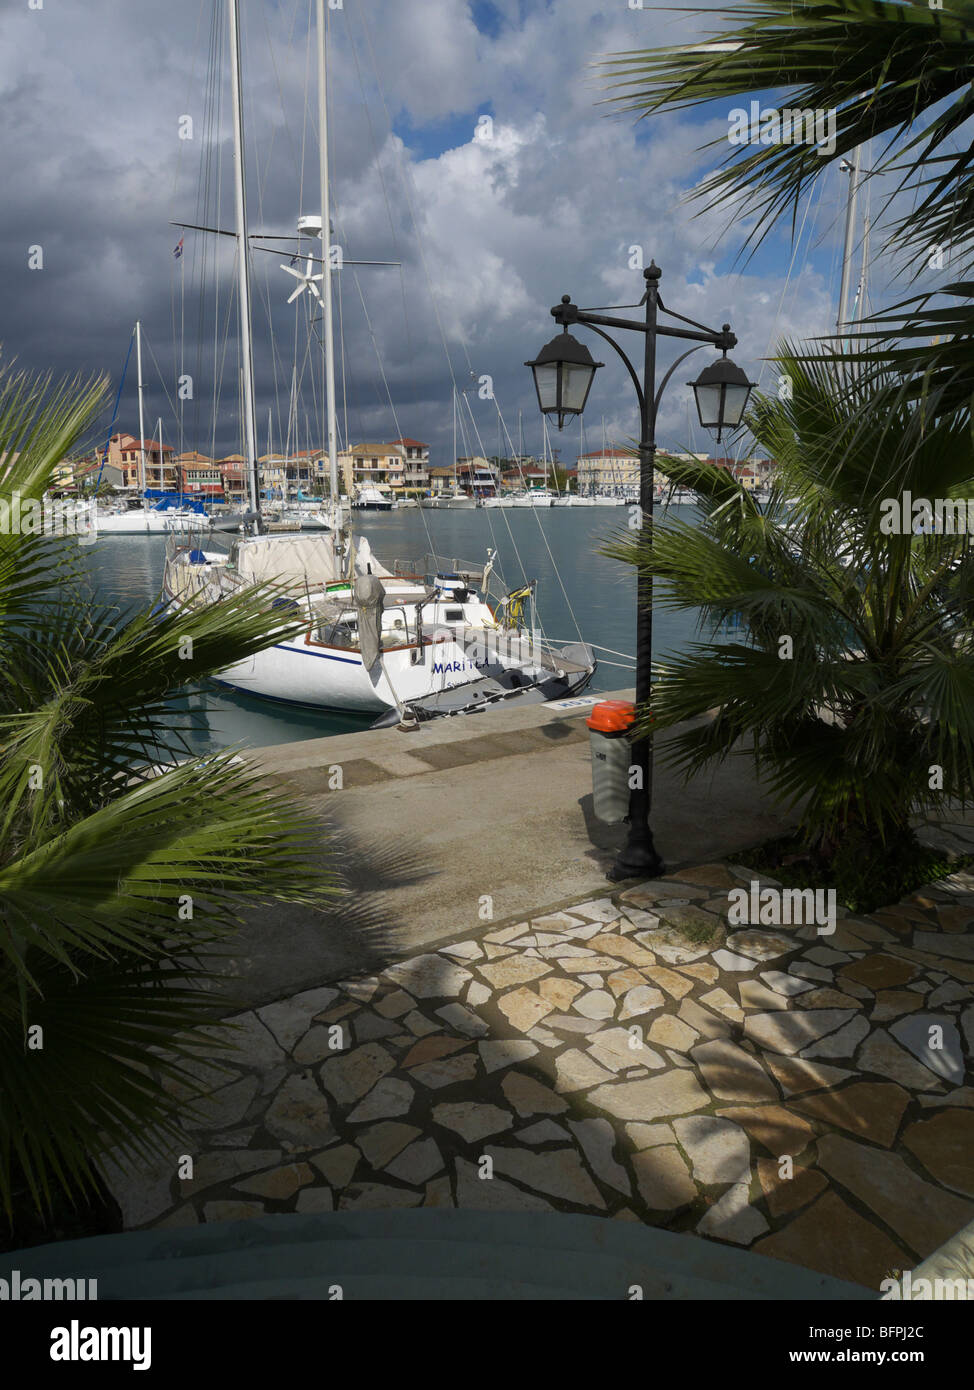 The marina at Lefkada, Greece. Stock Photo